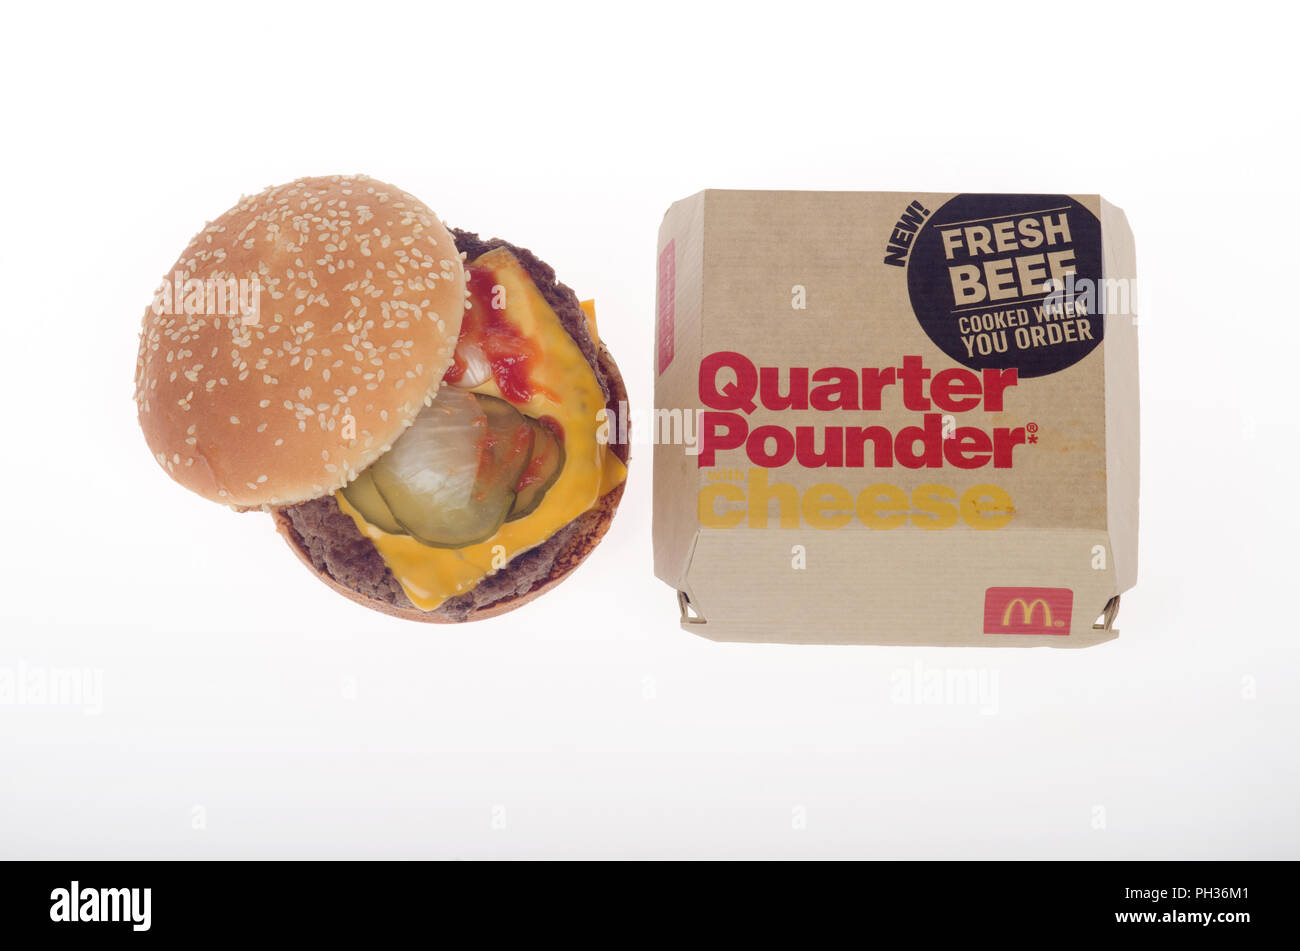 McDonald's carni fresche bovine cotte a fine trimestre Pounder con formaggio Cheeseburger con giallo formaggi, sottaceti, ketchup e cipolle insieme con la scatola. Foto Stock